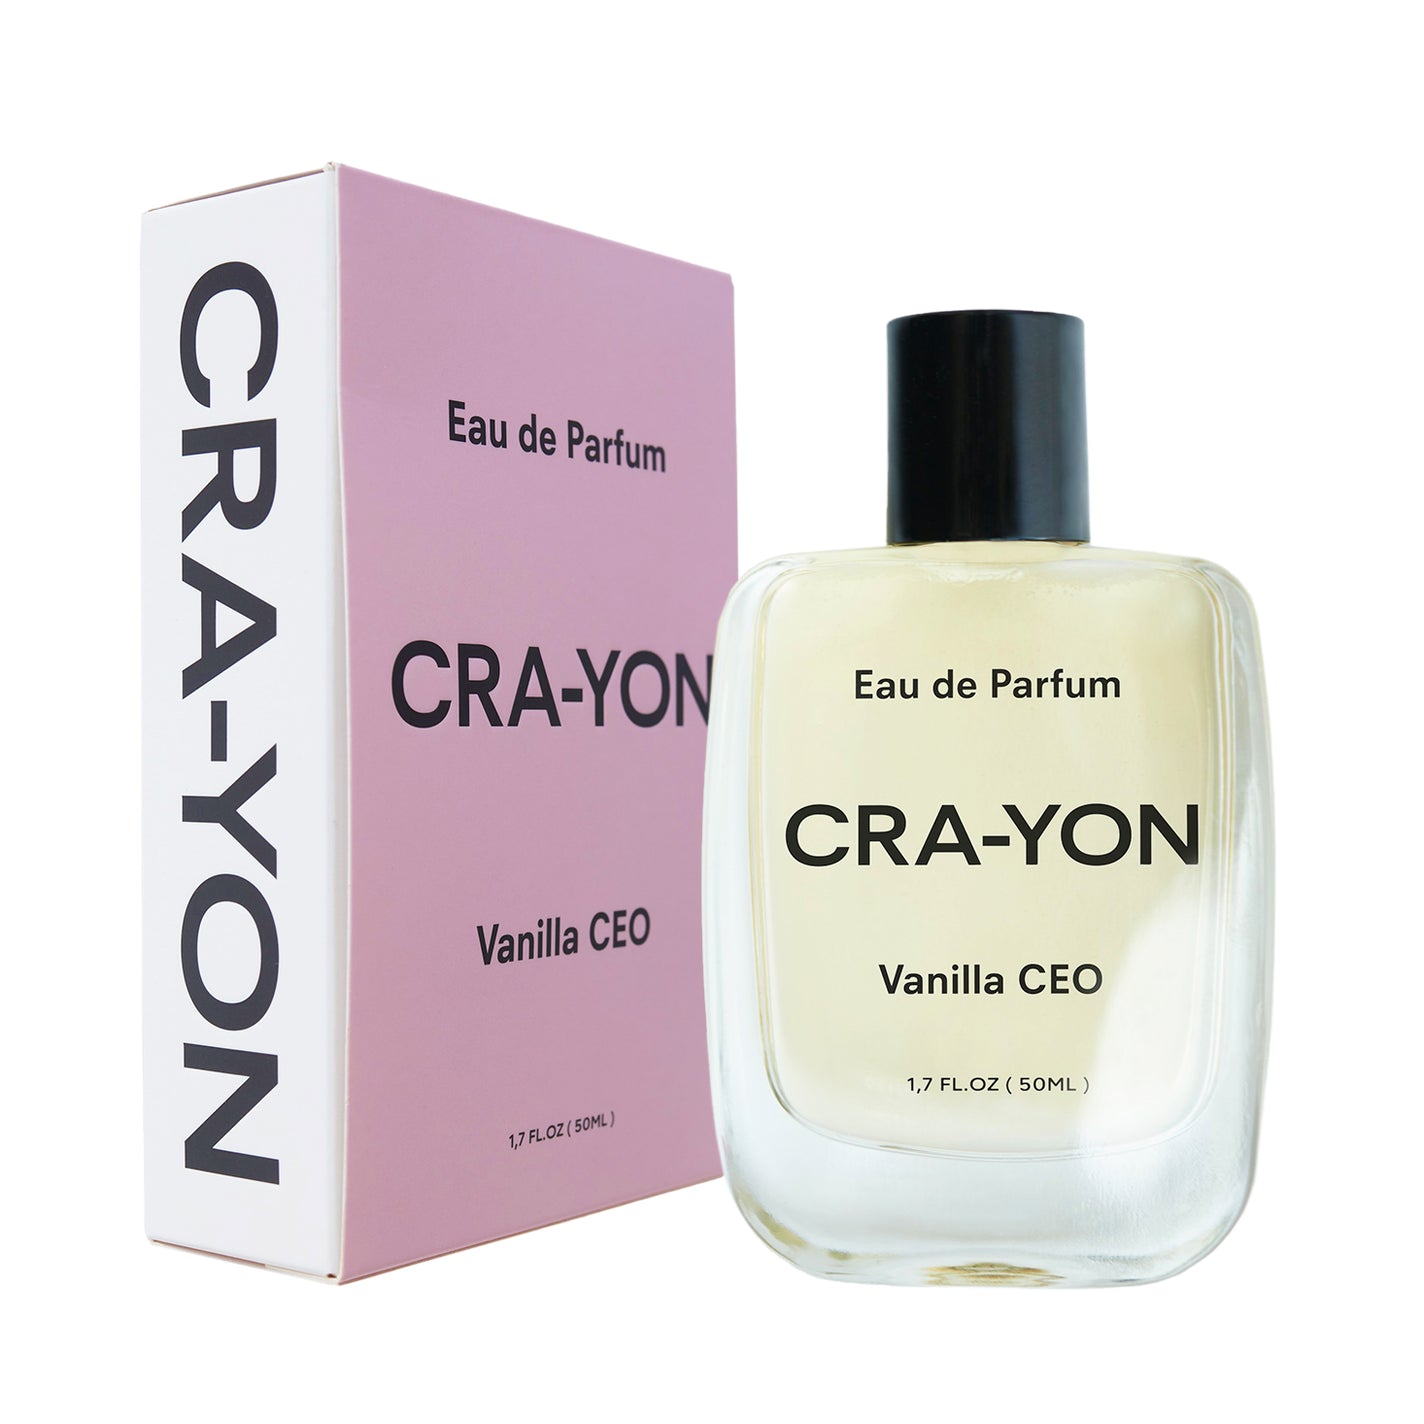 CRA-YON Vanilla CEO Eau de Parfum - 50ml